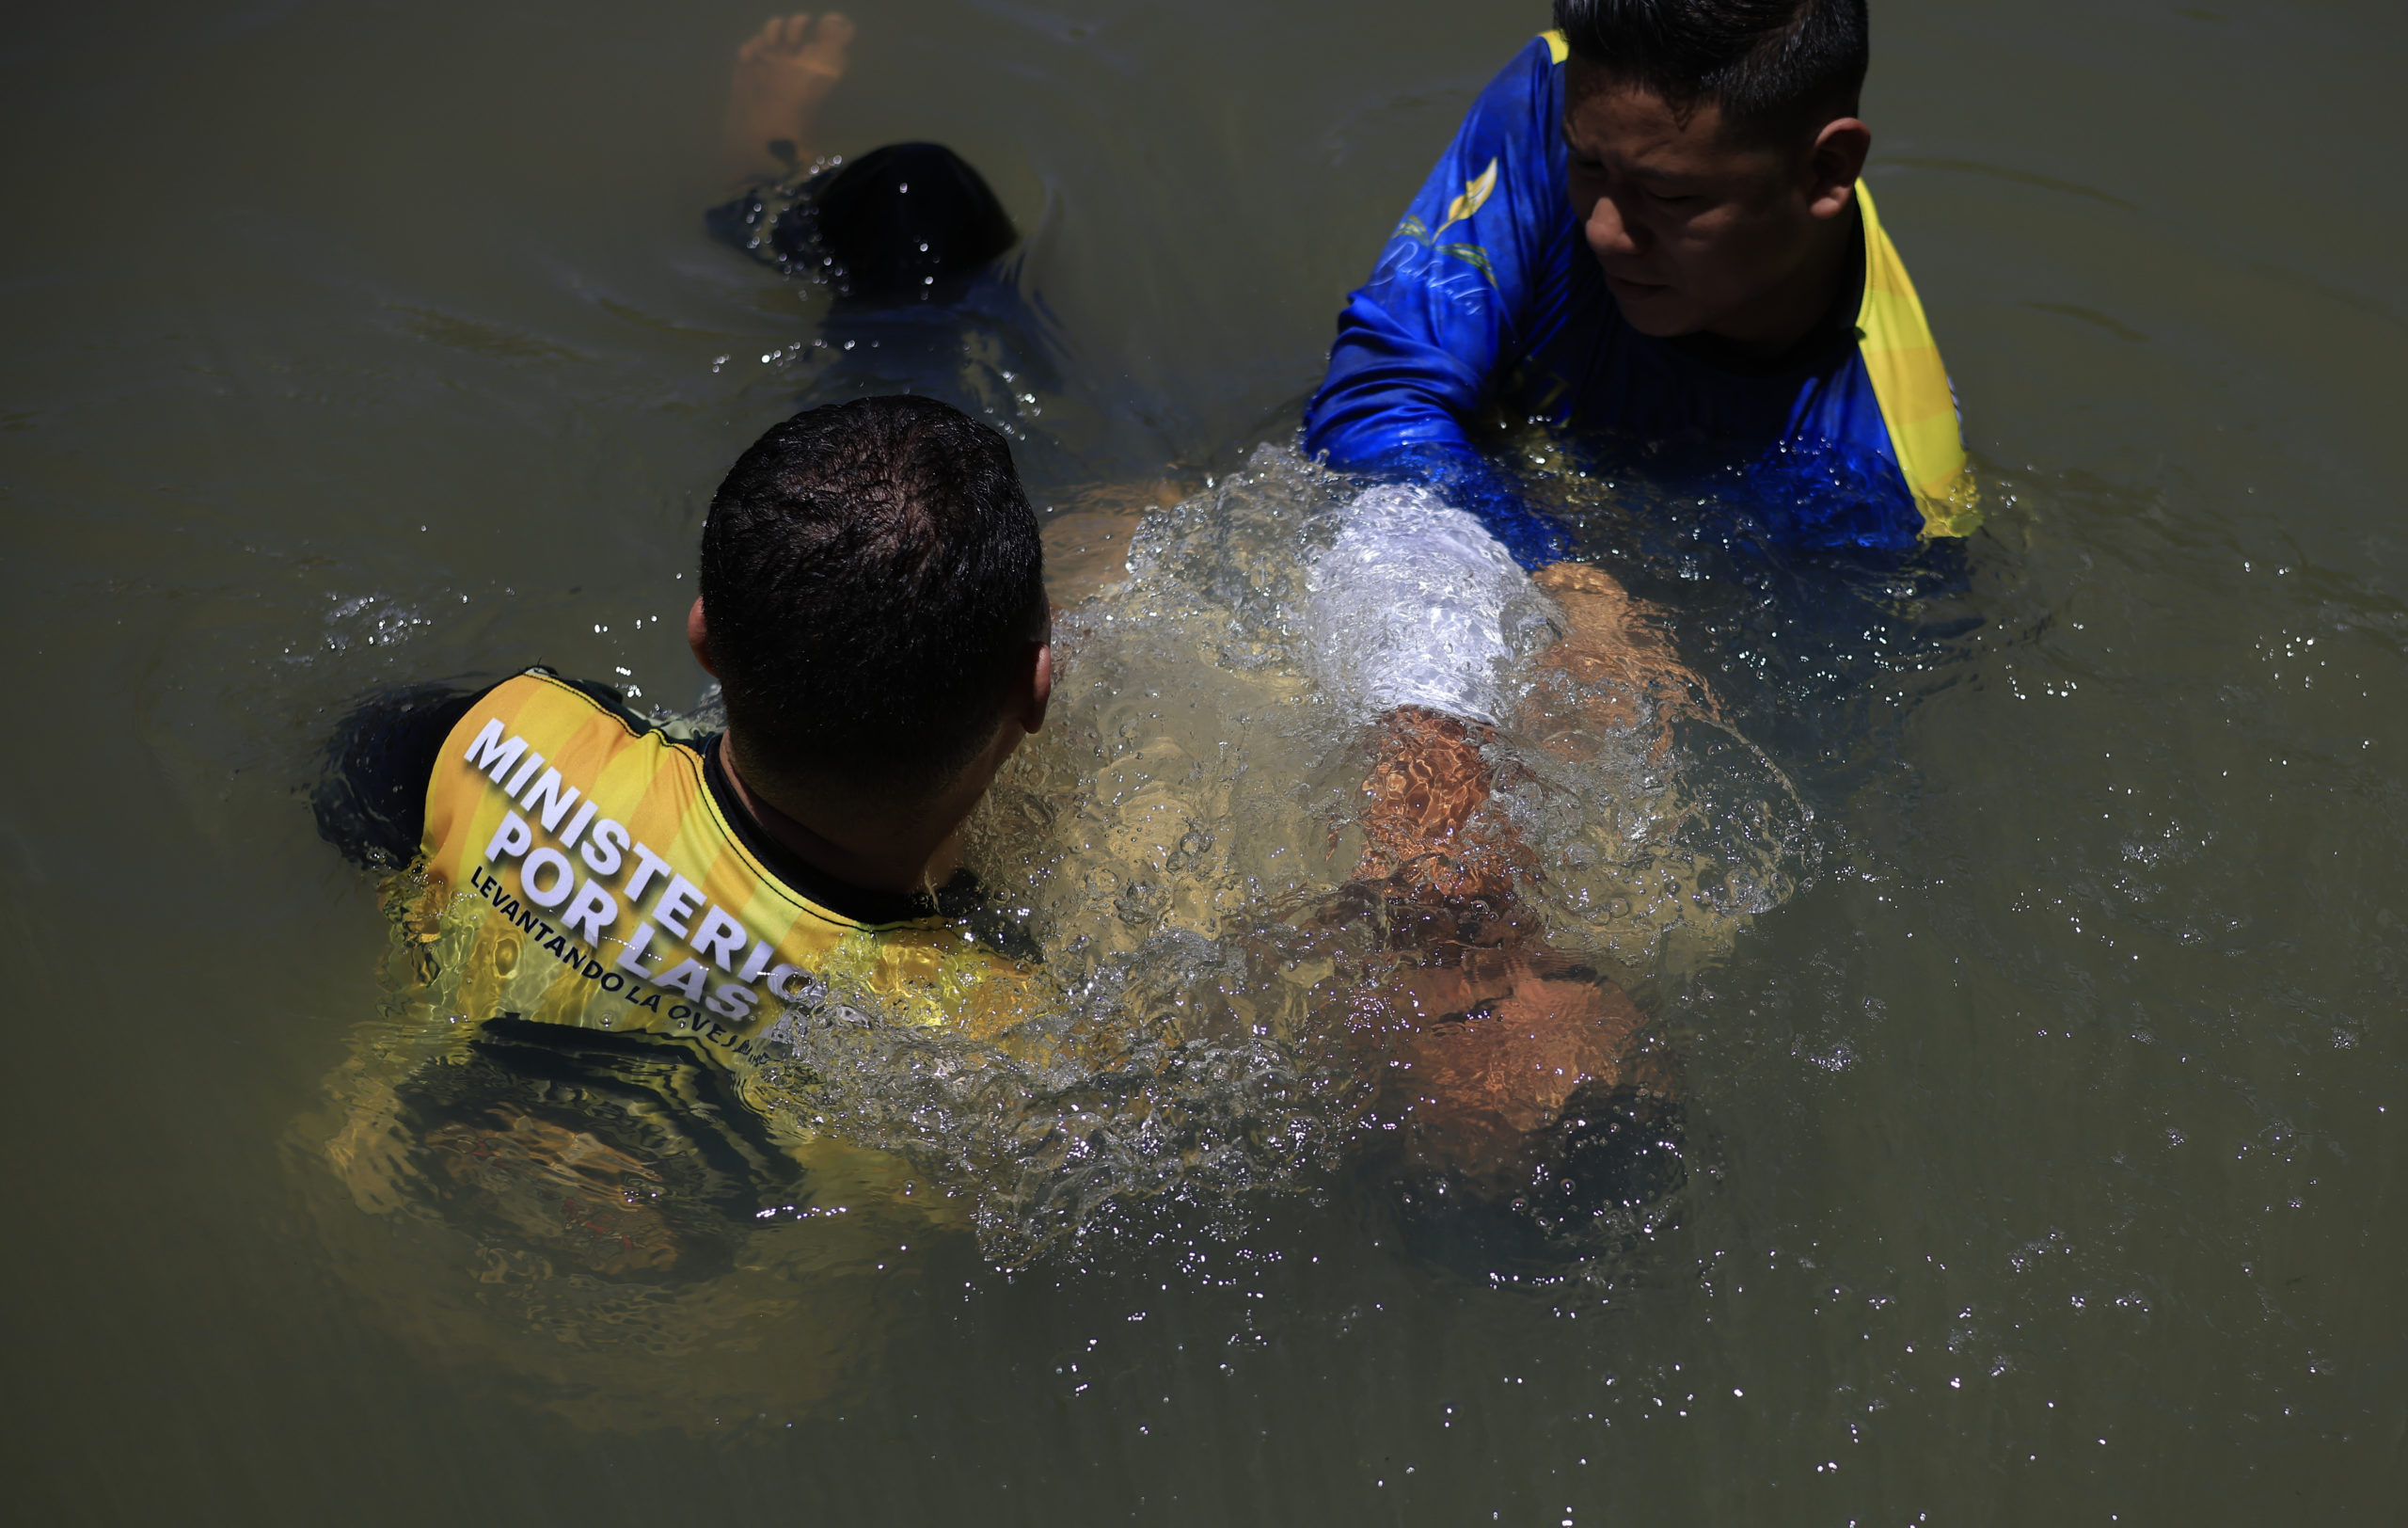 Pastores del Ministerio Amor por las Almas bautizan a un exmiembro de la pandilla MS-13 en el río de San Matías que es controlado por el Barrio 18. Foto CC/Jorge Cabrera